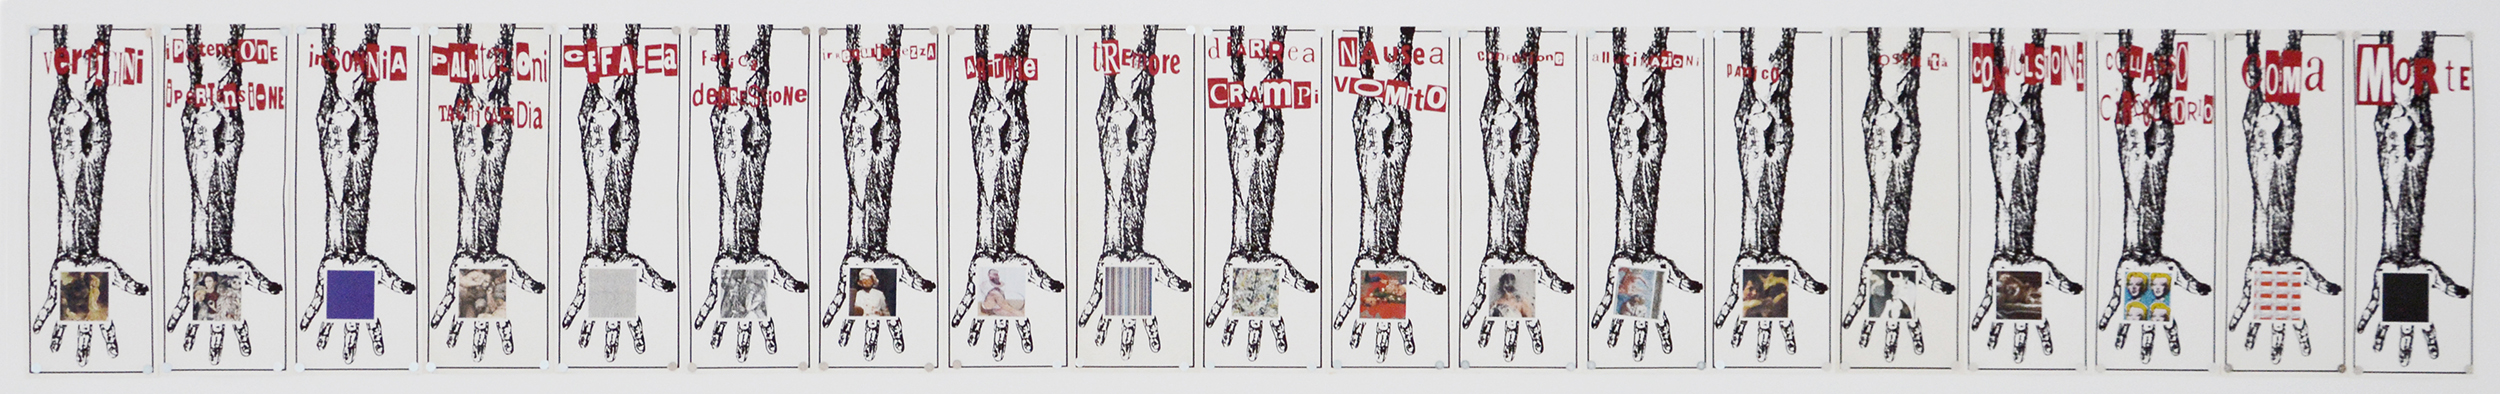 Mauro Gottardo, Effetti collaterali, 2001, tecnica mista su carta, 19 fogli (57,5x21 cm cad.)